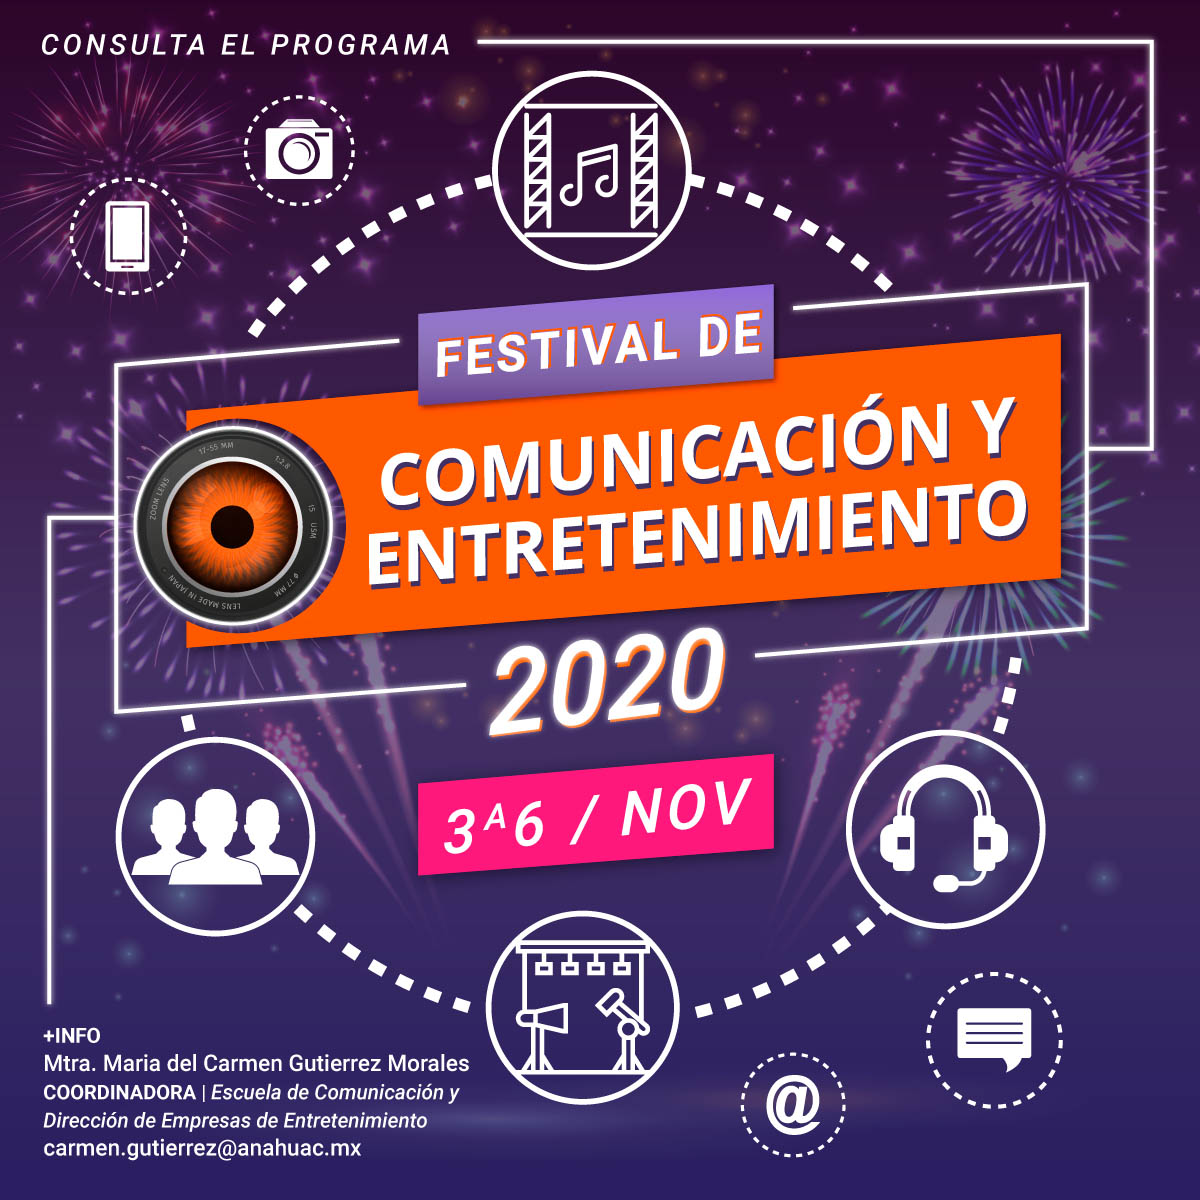 Festival de Comunicación y Entretenimiento 2020